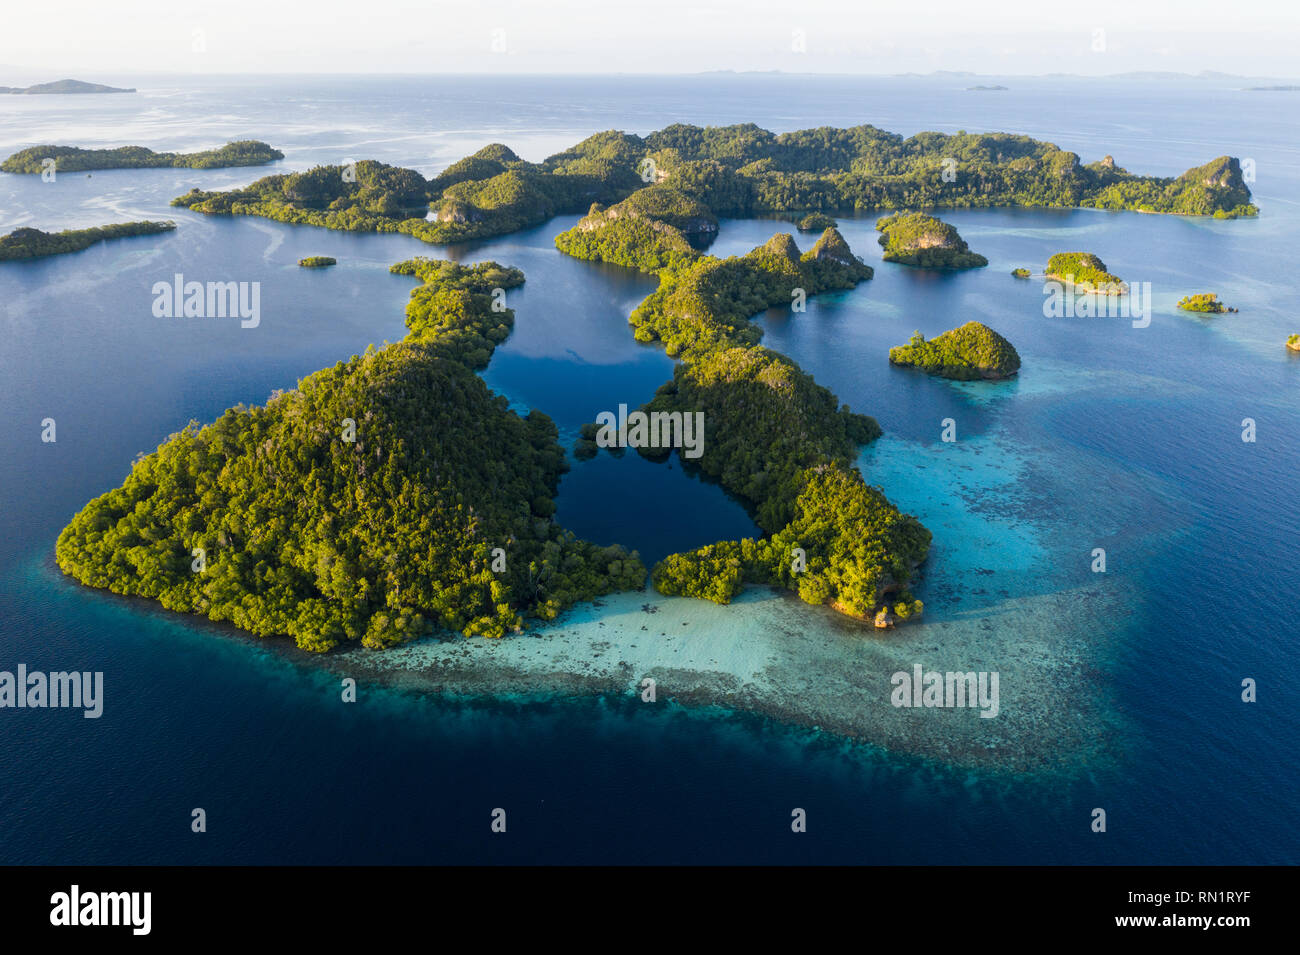 Una veduta aerea di isole Raja Ampat. Questa area è il cuore della biodiversità marina ed è una destinazione popolare per i subacquei e gli amanti dello snorkelling. Foto Stock